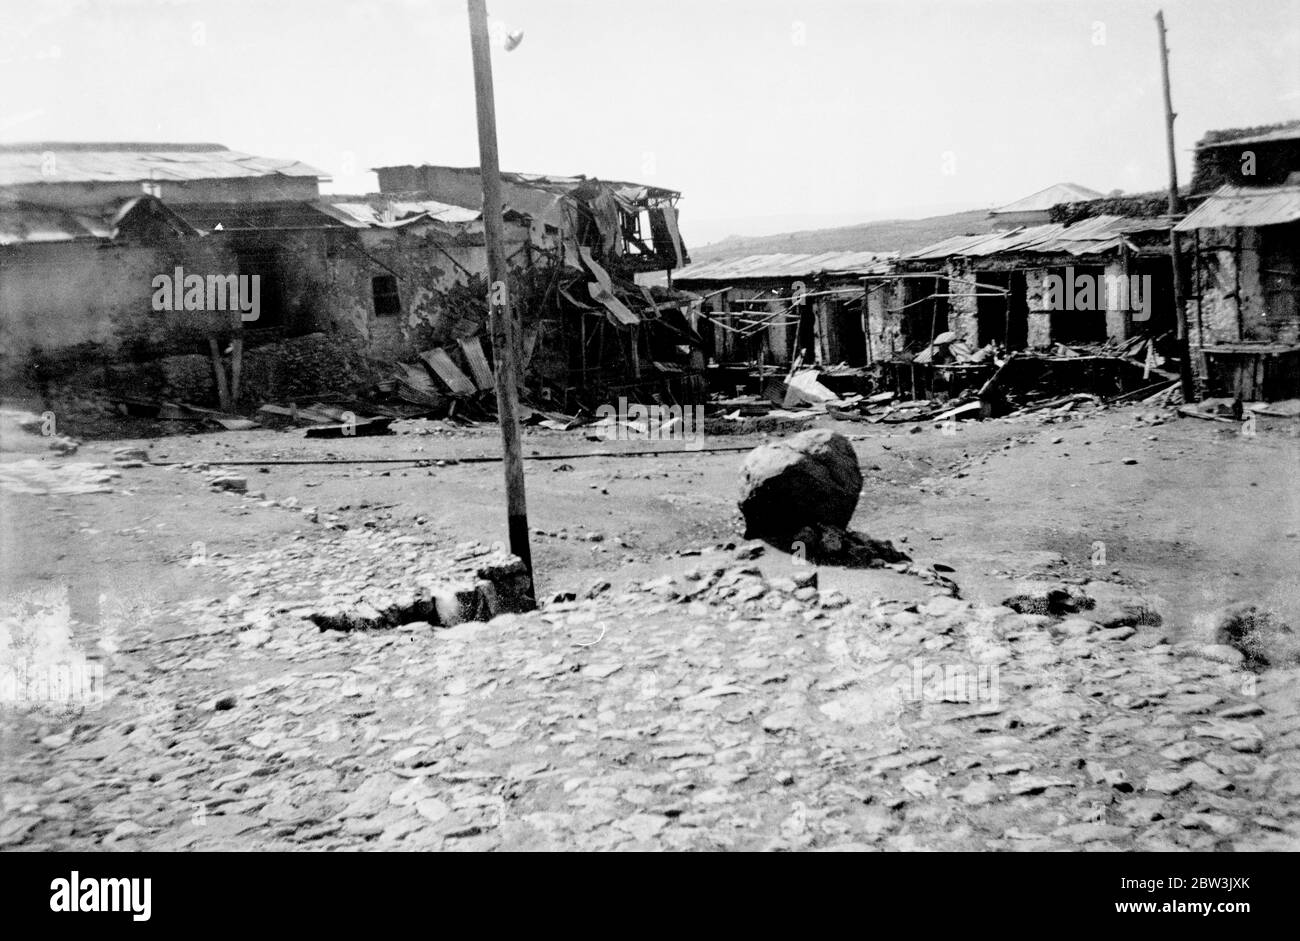 Harar città distrutta e deserta , attende l'occupazione italiana . Harar , la seconda città di Abissinia devastata da ripetute incursioni aeree e attacchi di gas , presenta un quadro di desolazione in attesa dell' arrivo dell' esercito invasore di Crazieni dal sud . Molti degli edifici principali sono distrutte e inabitabili a seguito delle ripetute incursioni dei bombardamenti . Foto spettacoli , l'interno relitto di una casa ad harar bombardato nel più recente RAID aereo . 22 aprile 1936 Foto Stock